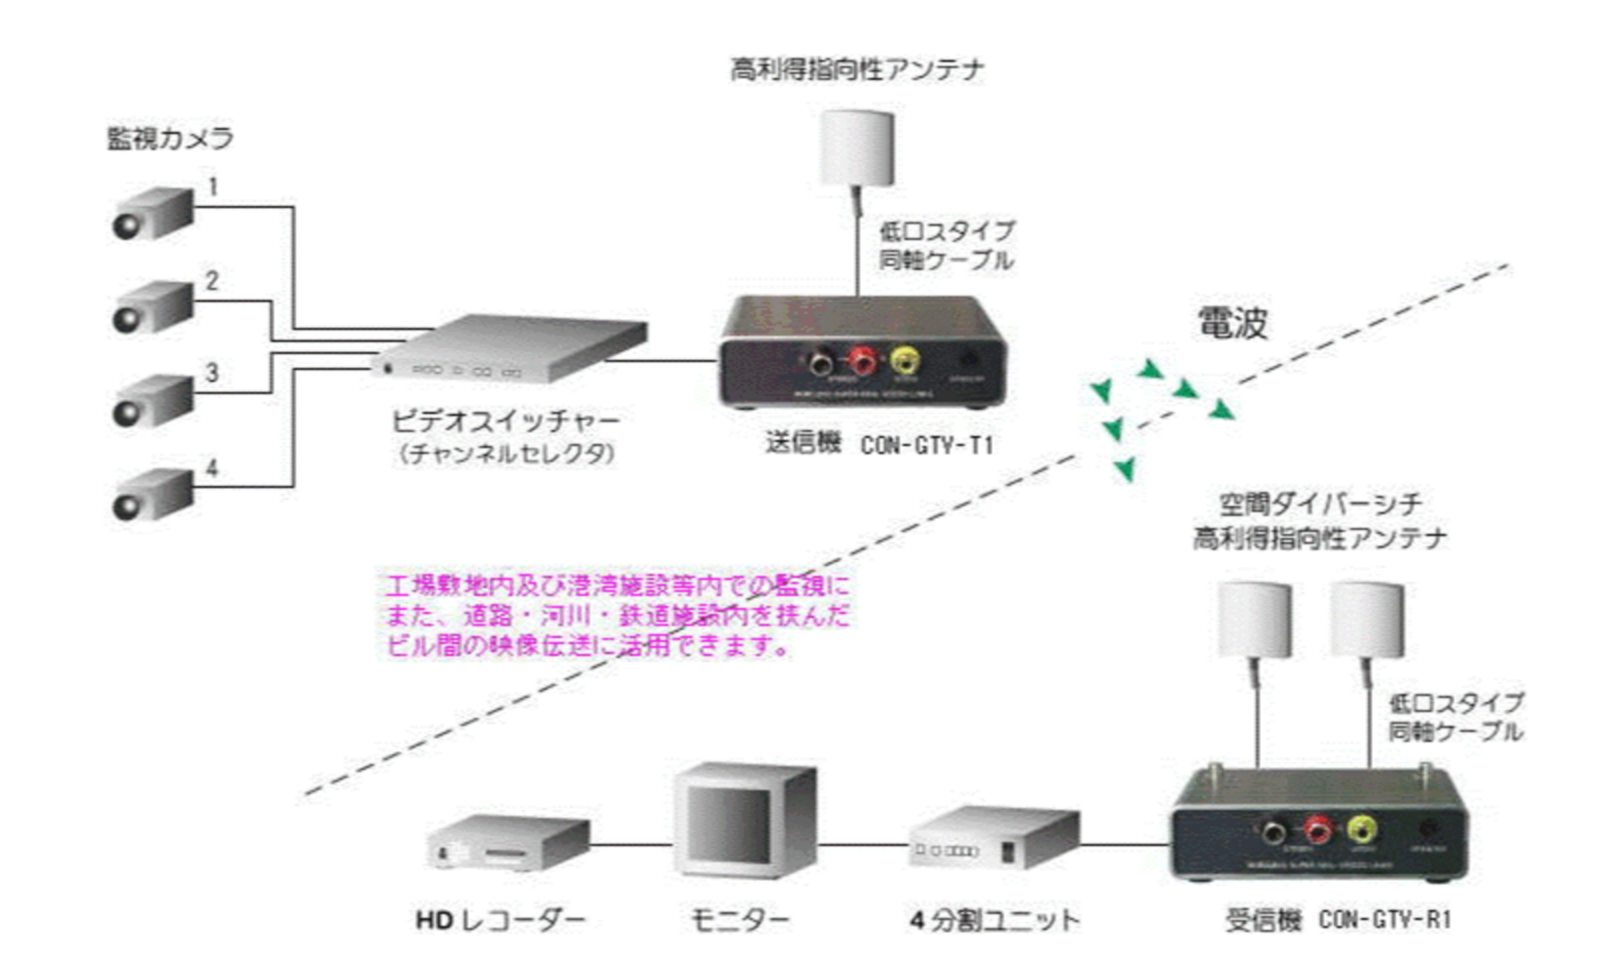 映像音声伝送装置（2.4GHz帯無線タイプ）CON-GTV-R1 / CON-GTV-T1 ...